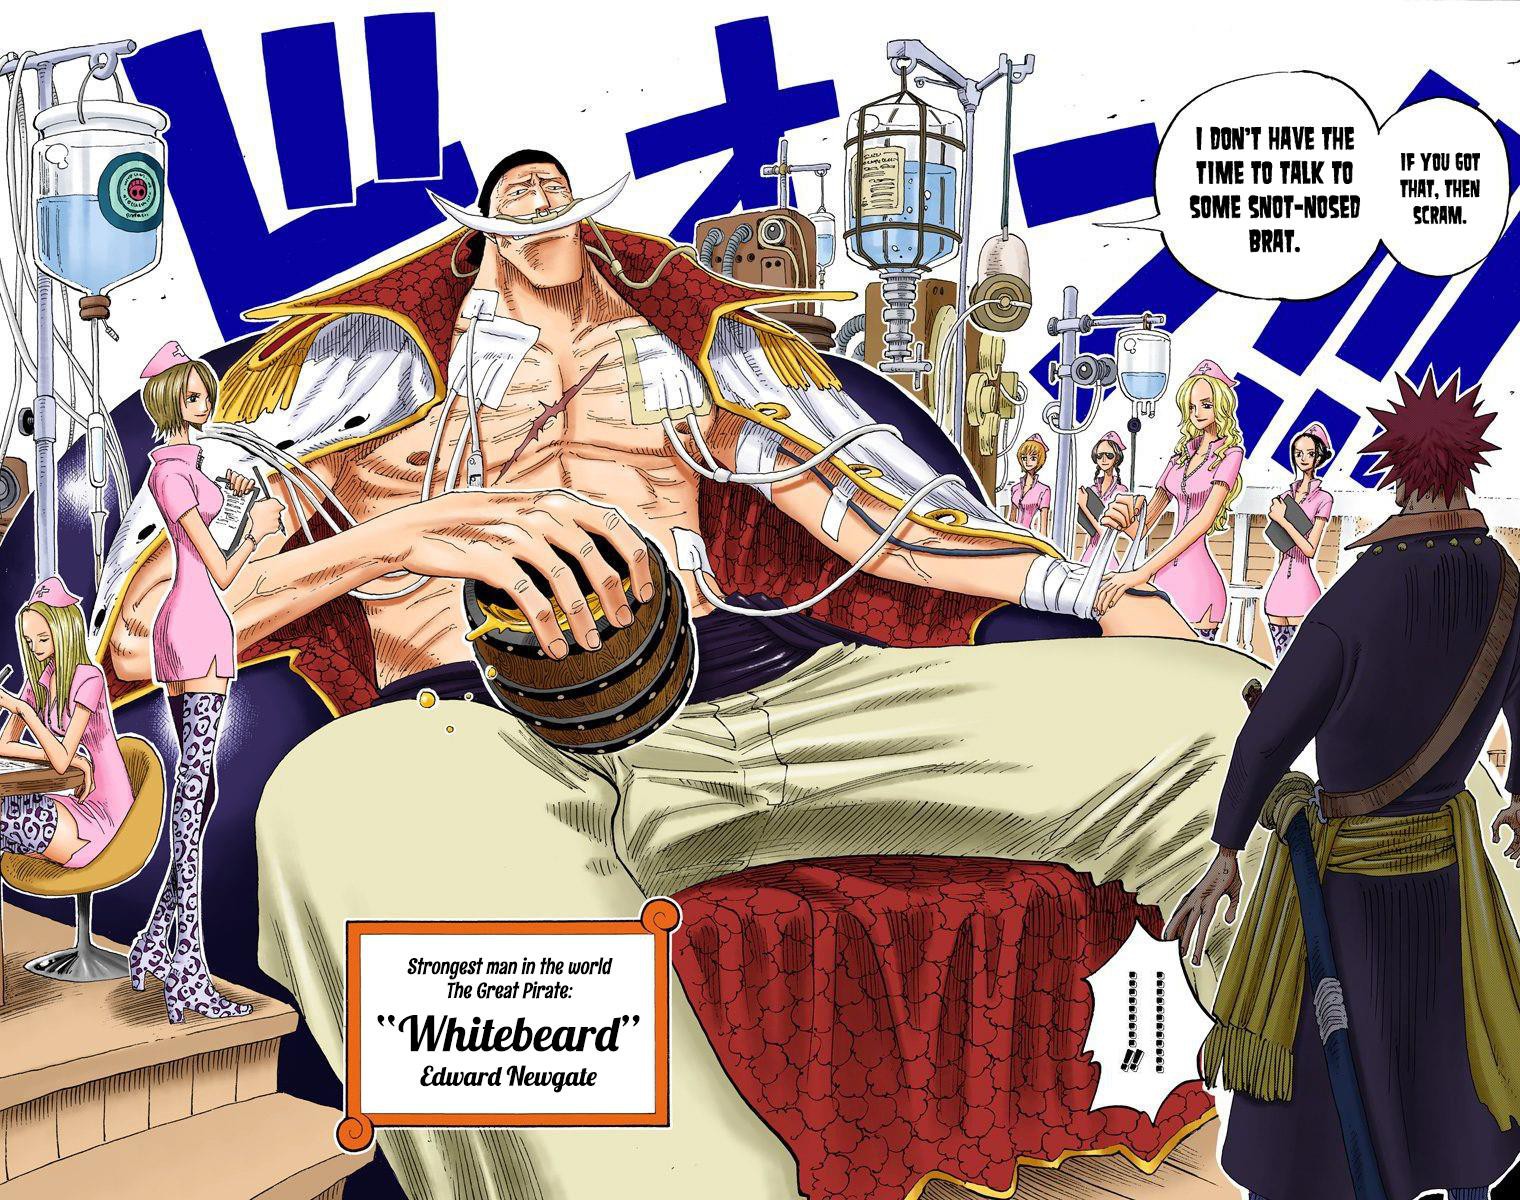 Tân Thế Giới trong One Piece là nơi nguy hiểm đến thế nào?